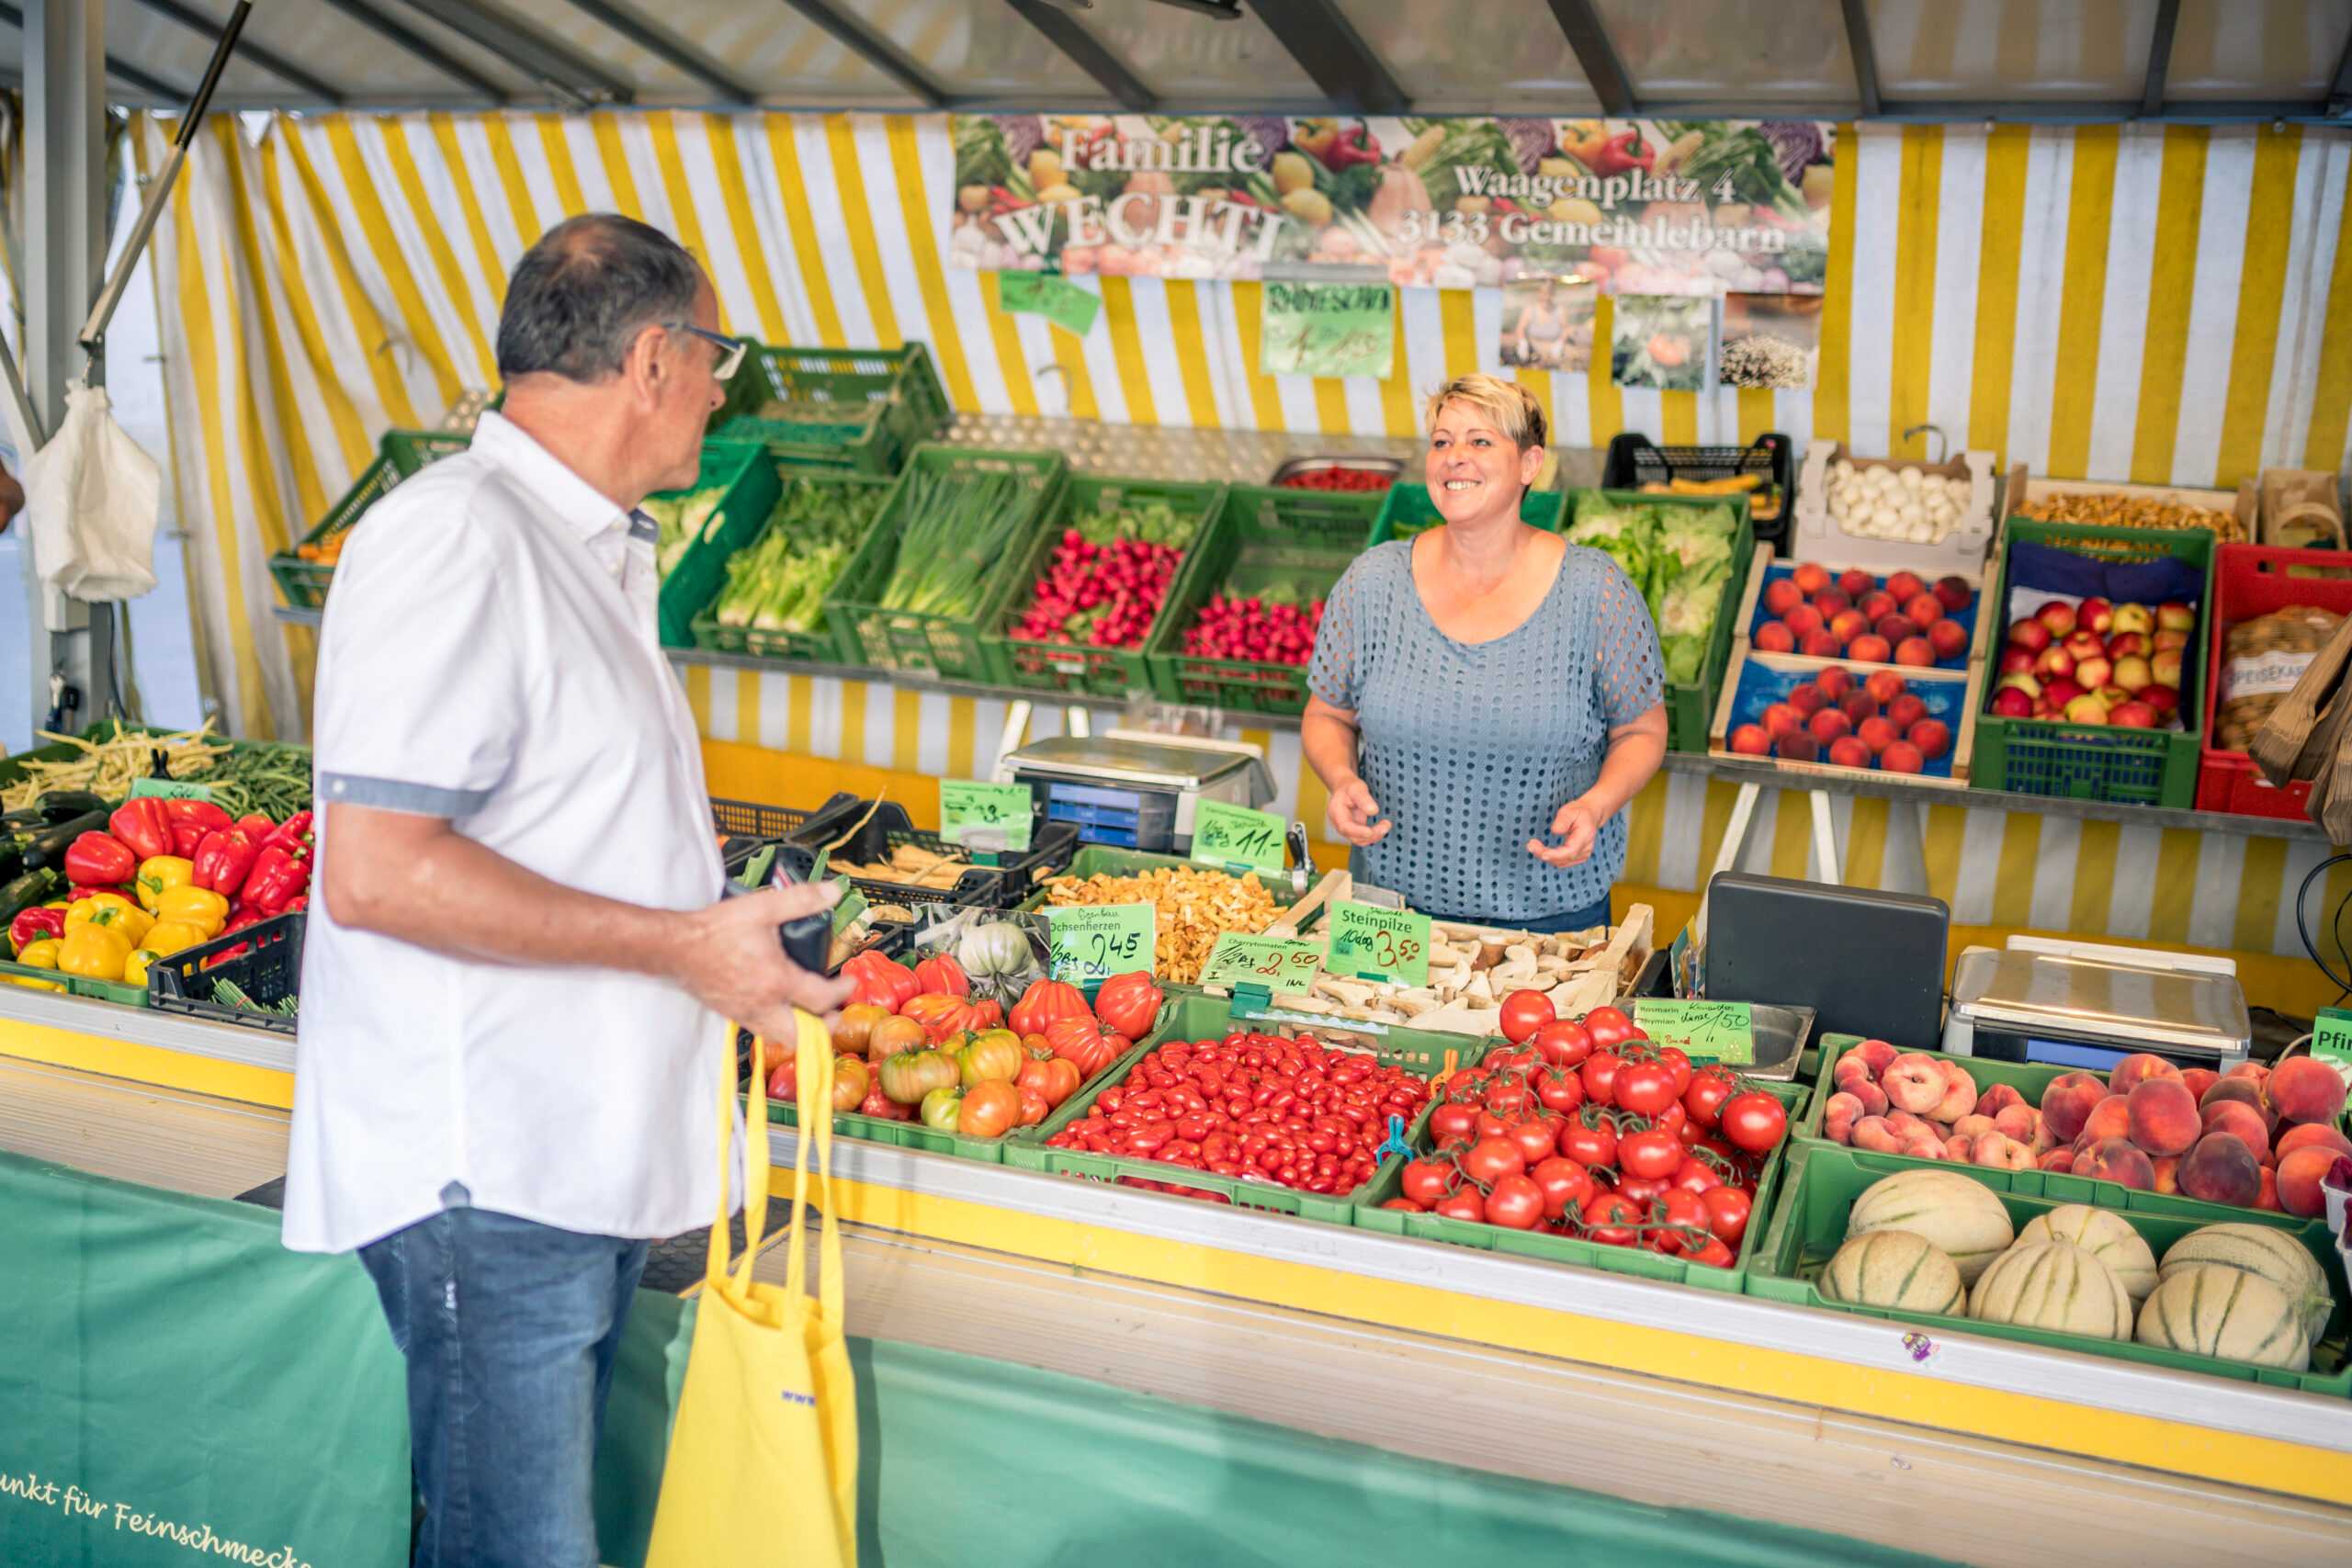 Das Foto zeigt einen Gemüsemarktstand mit buntem Gemüse, einer Verkäuferin und einem Käufer.